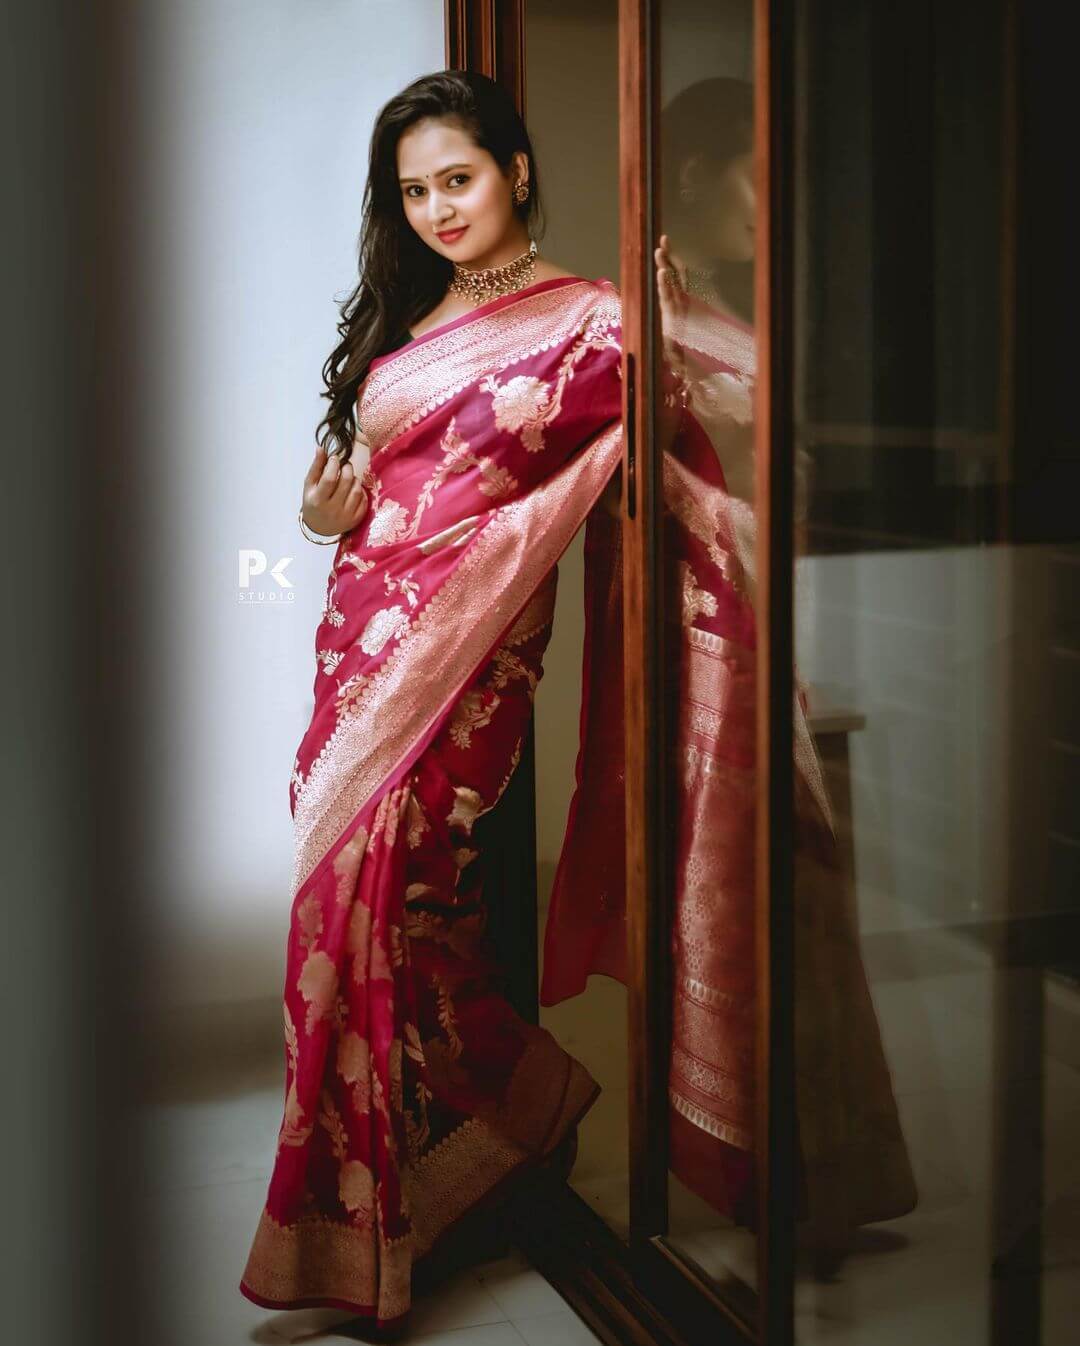 Amulya Look Beautiful In Pink Silk Saree